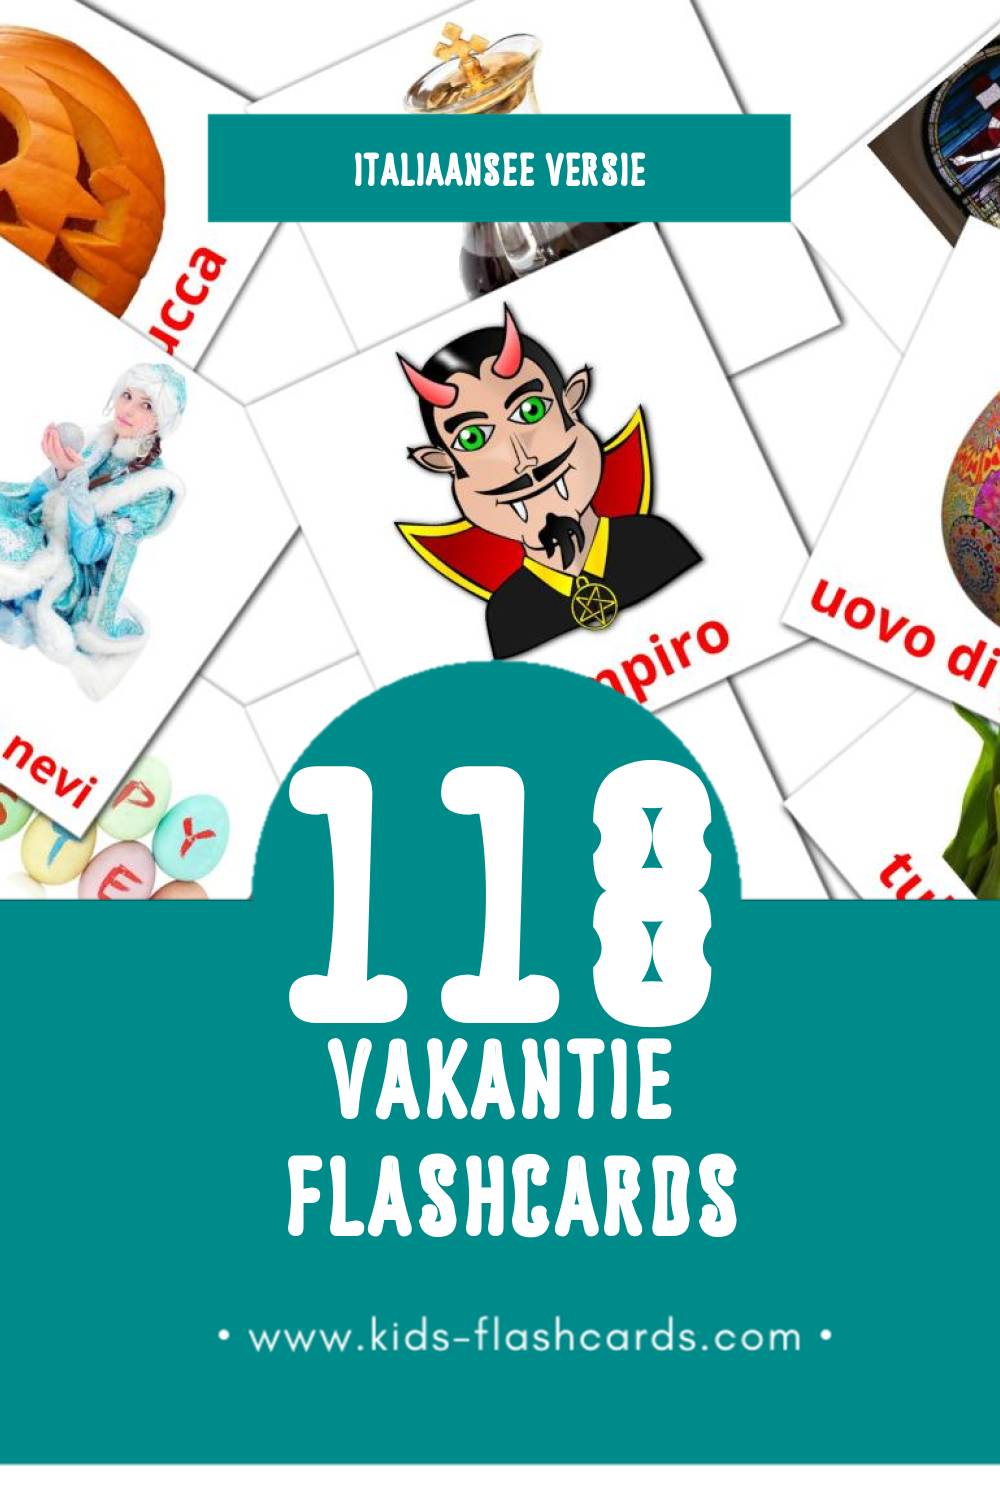 Visuele Vacanze Flashcards voor Kleuters (118 kaarten in het Italiaanse)